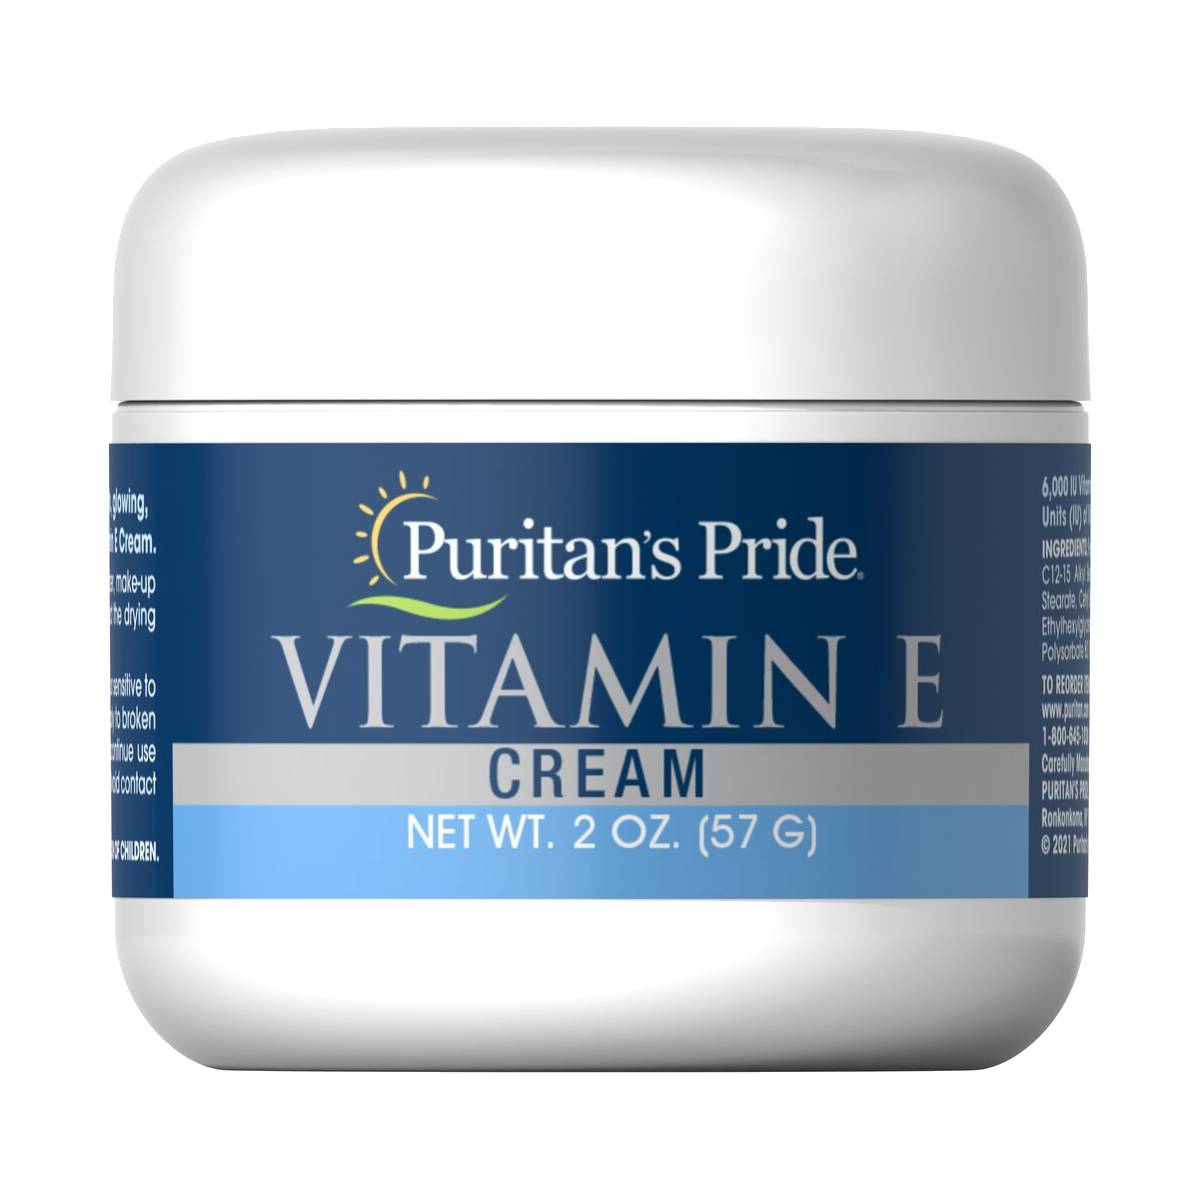 Puritan's Pride, Vitamin E Cream 6,000 IU